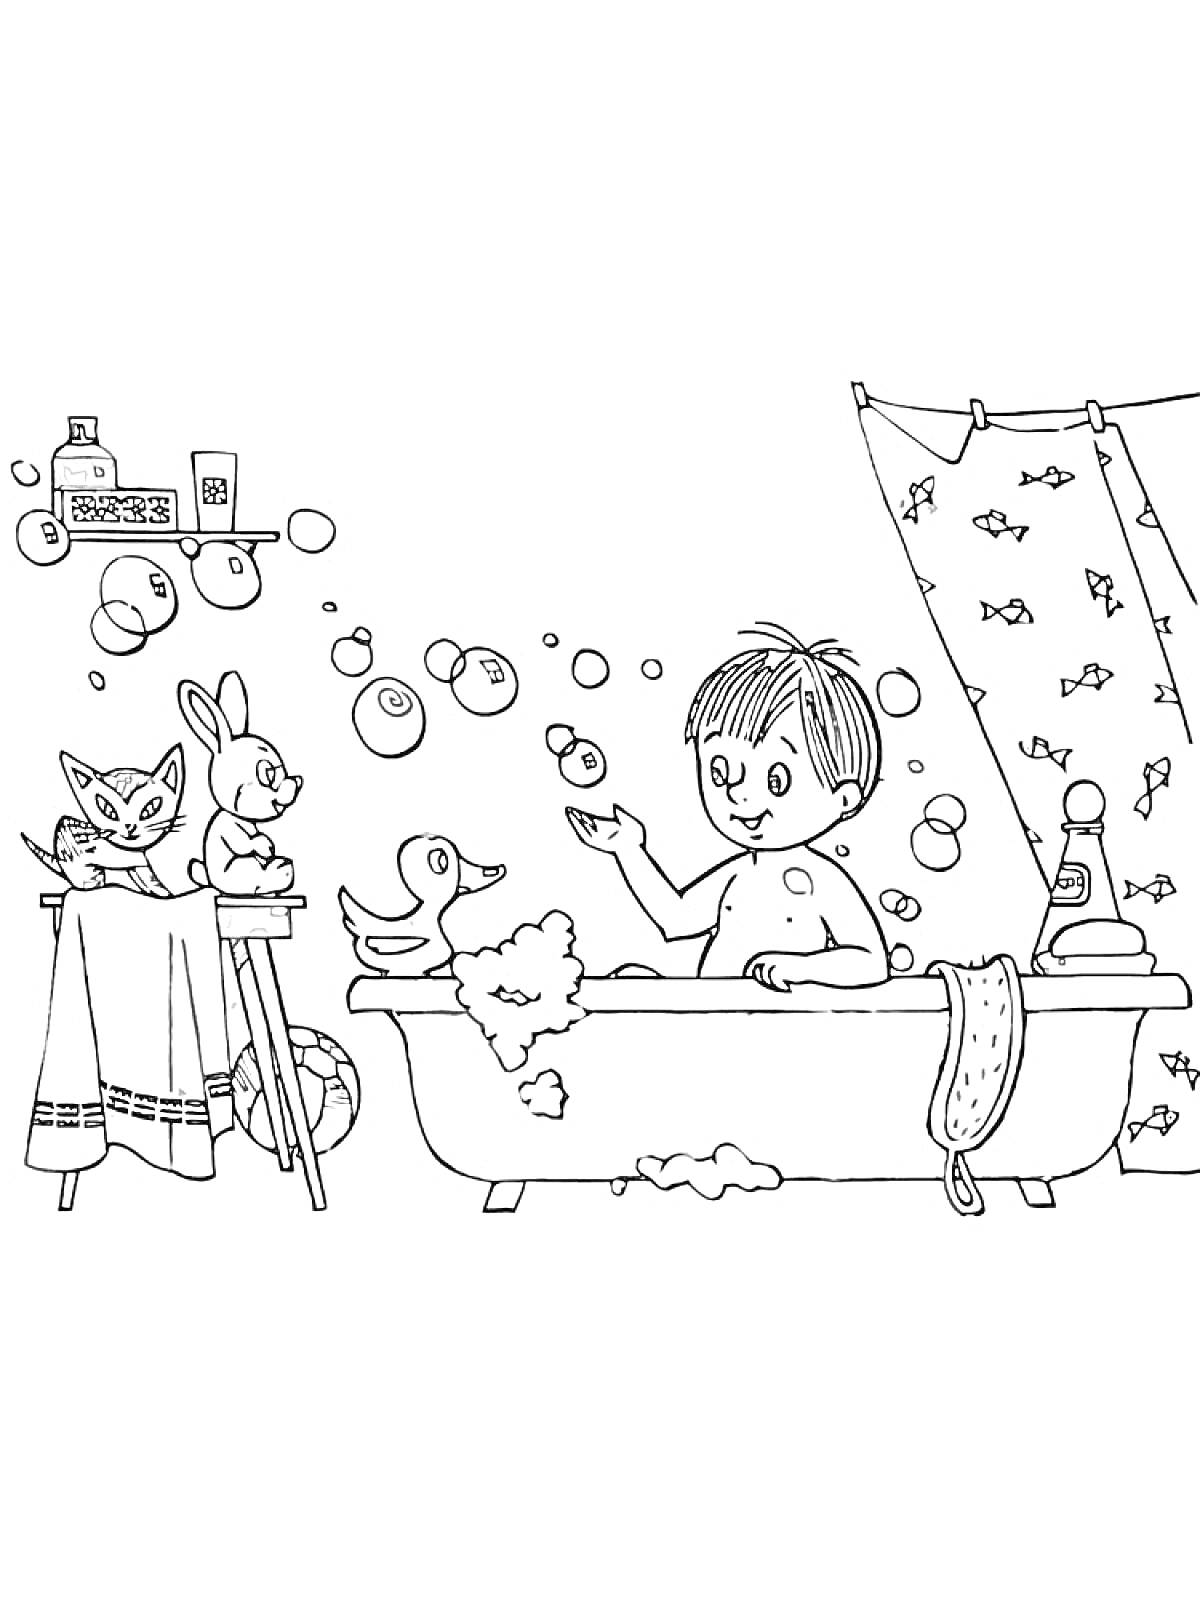 Раскраска Мальчик в ванной с утками и игрушками, полка с баночками, занавеска с рыбками, полотенце на стуле